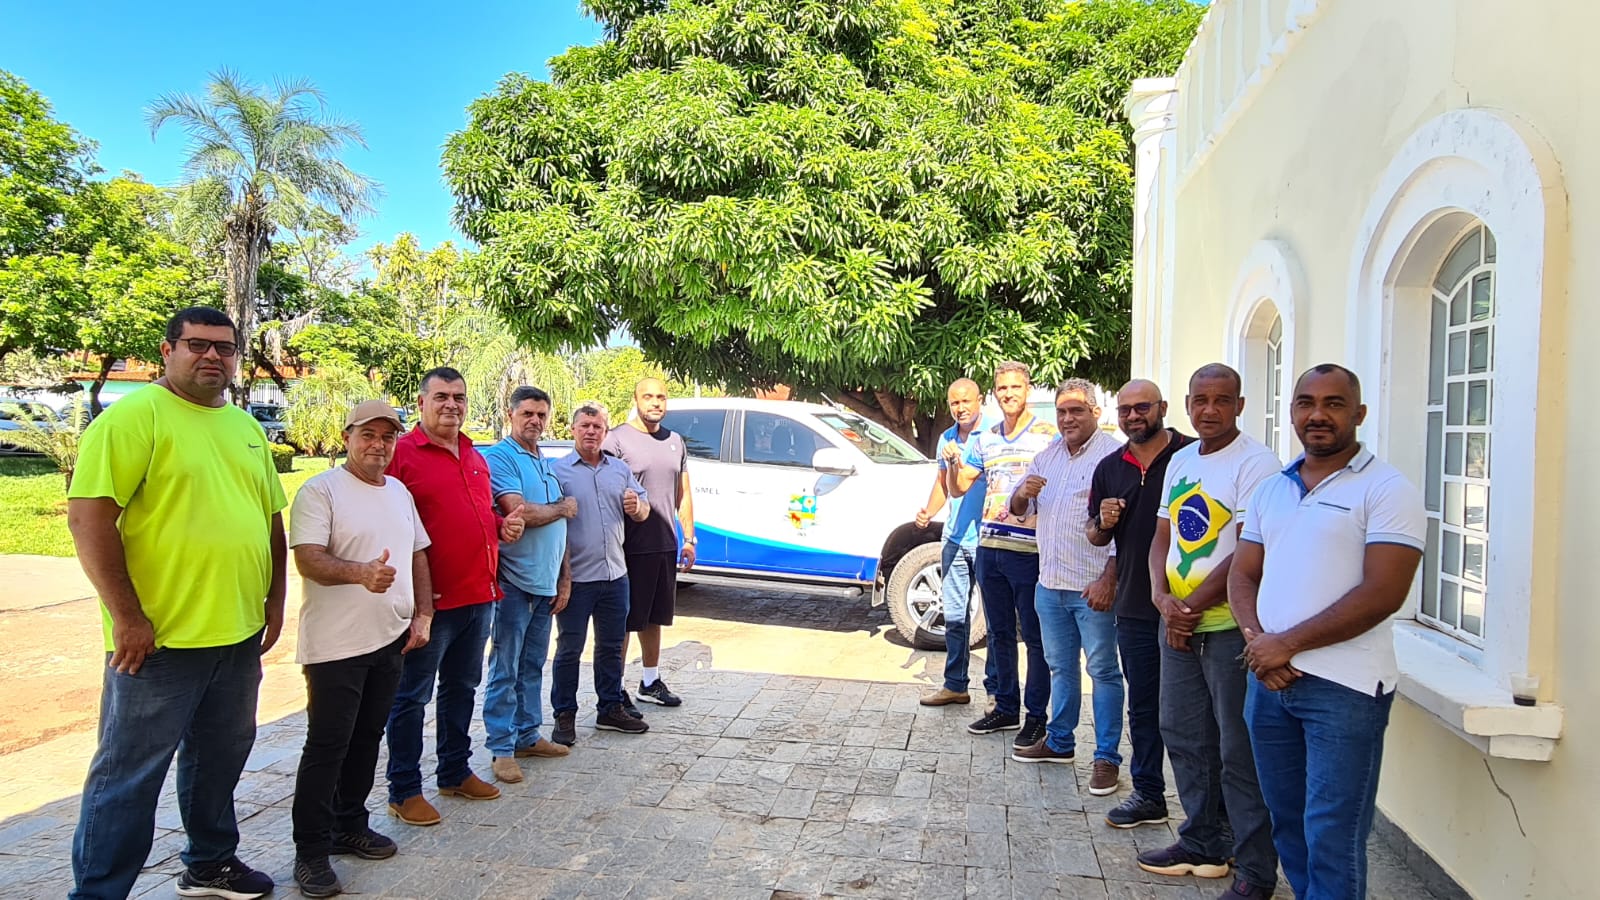 A Prefeitura de Nova Xavantina Adquire Camionete 0km Para Fortalecer o Esporte Local, e Vereadores da Câmara Municipal, Participaram do Recebimento Desse Veículo.